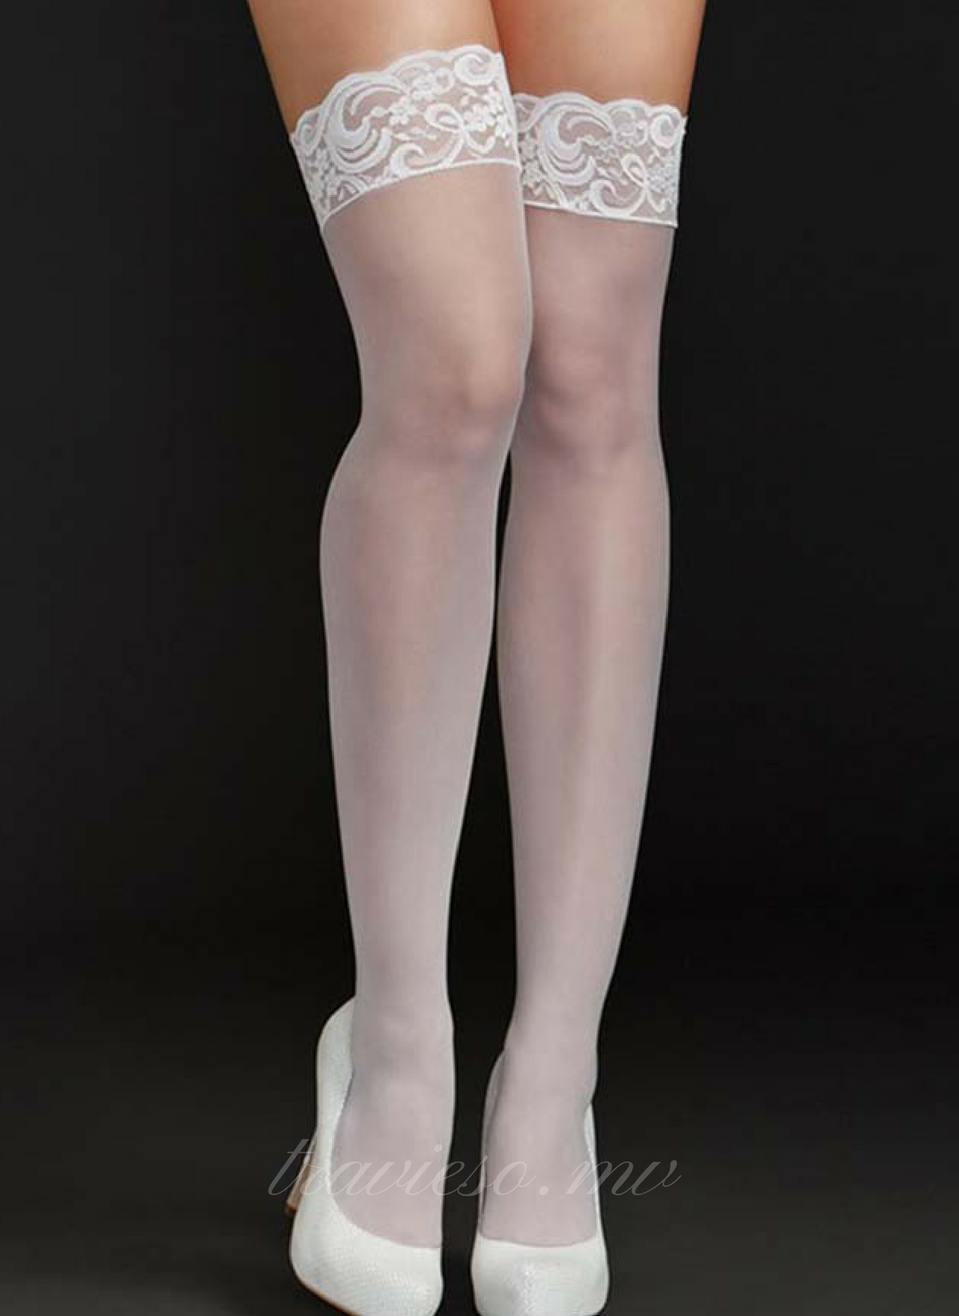 Sexy stockings - travieso.mv